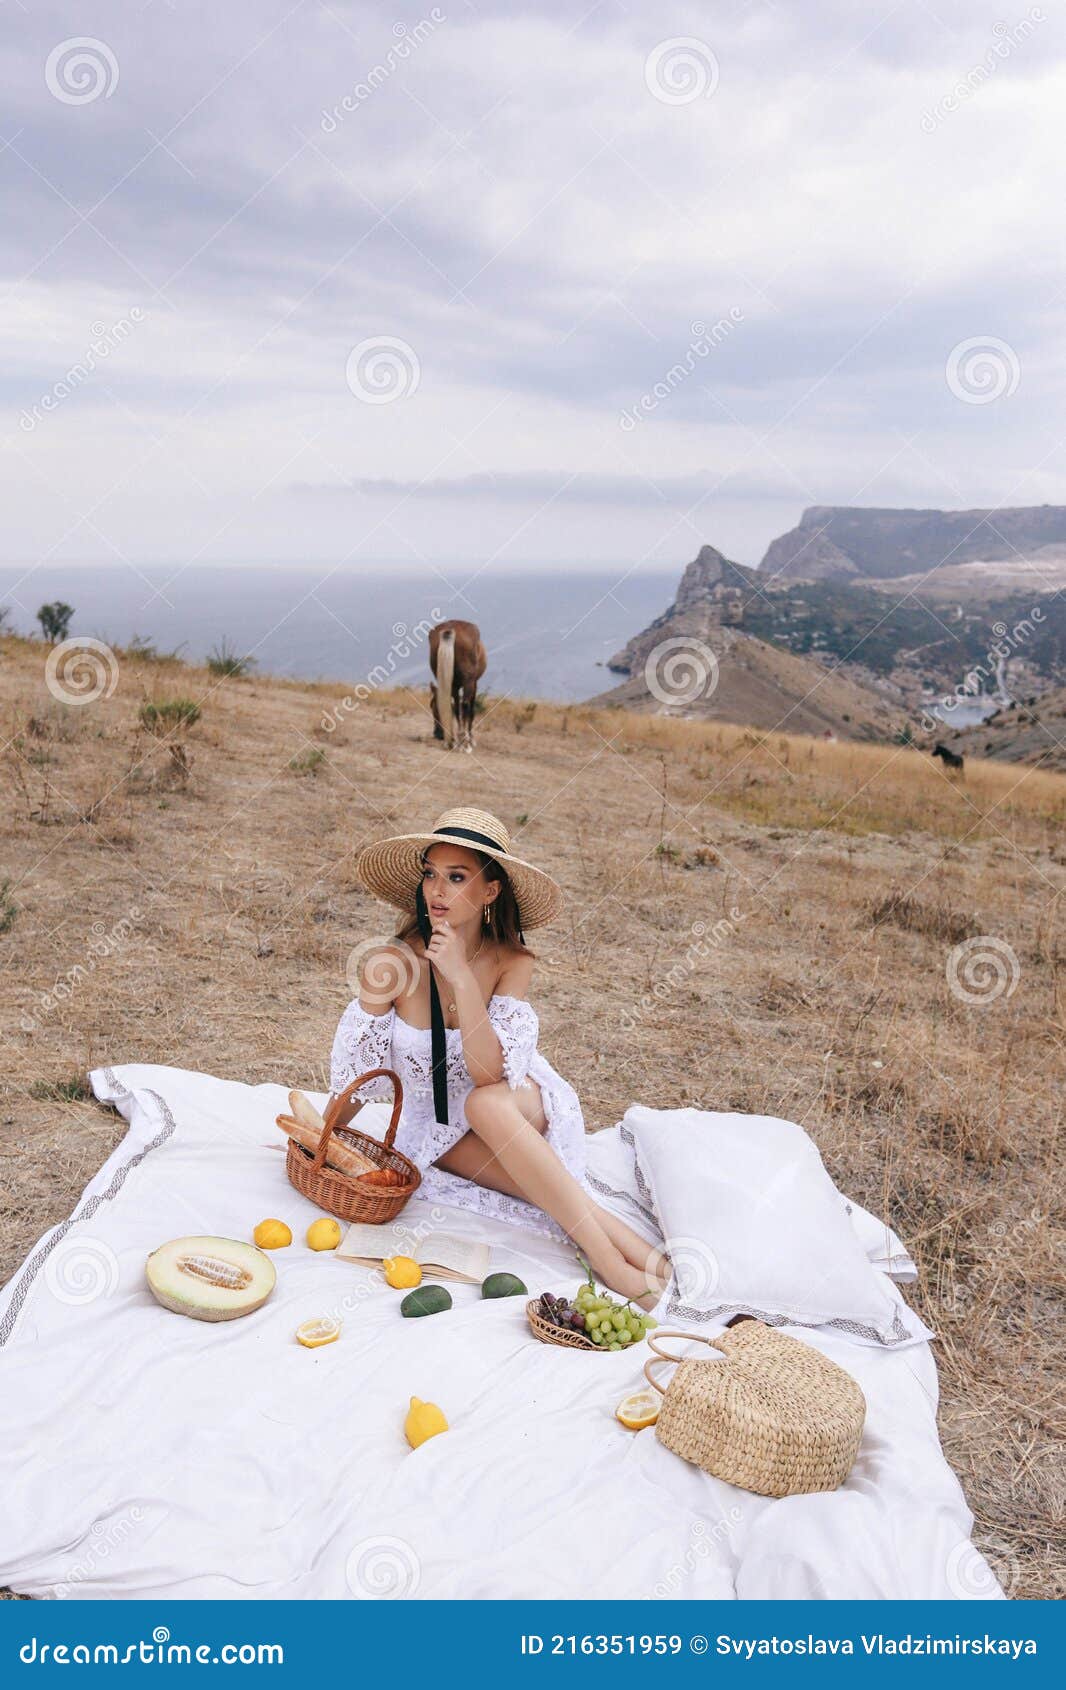 一身优雅、穿着与山景野餐的金发美女 库存照片. 图片 包括有 样式, 女孩, 发型, 性感, 幸福, 全景 - 216352010